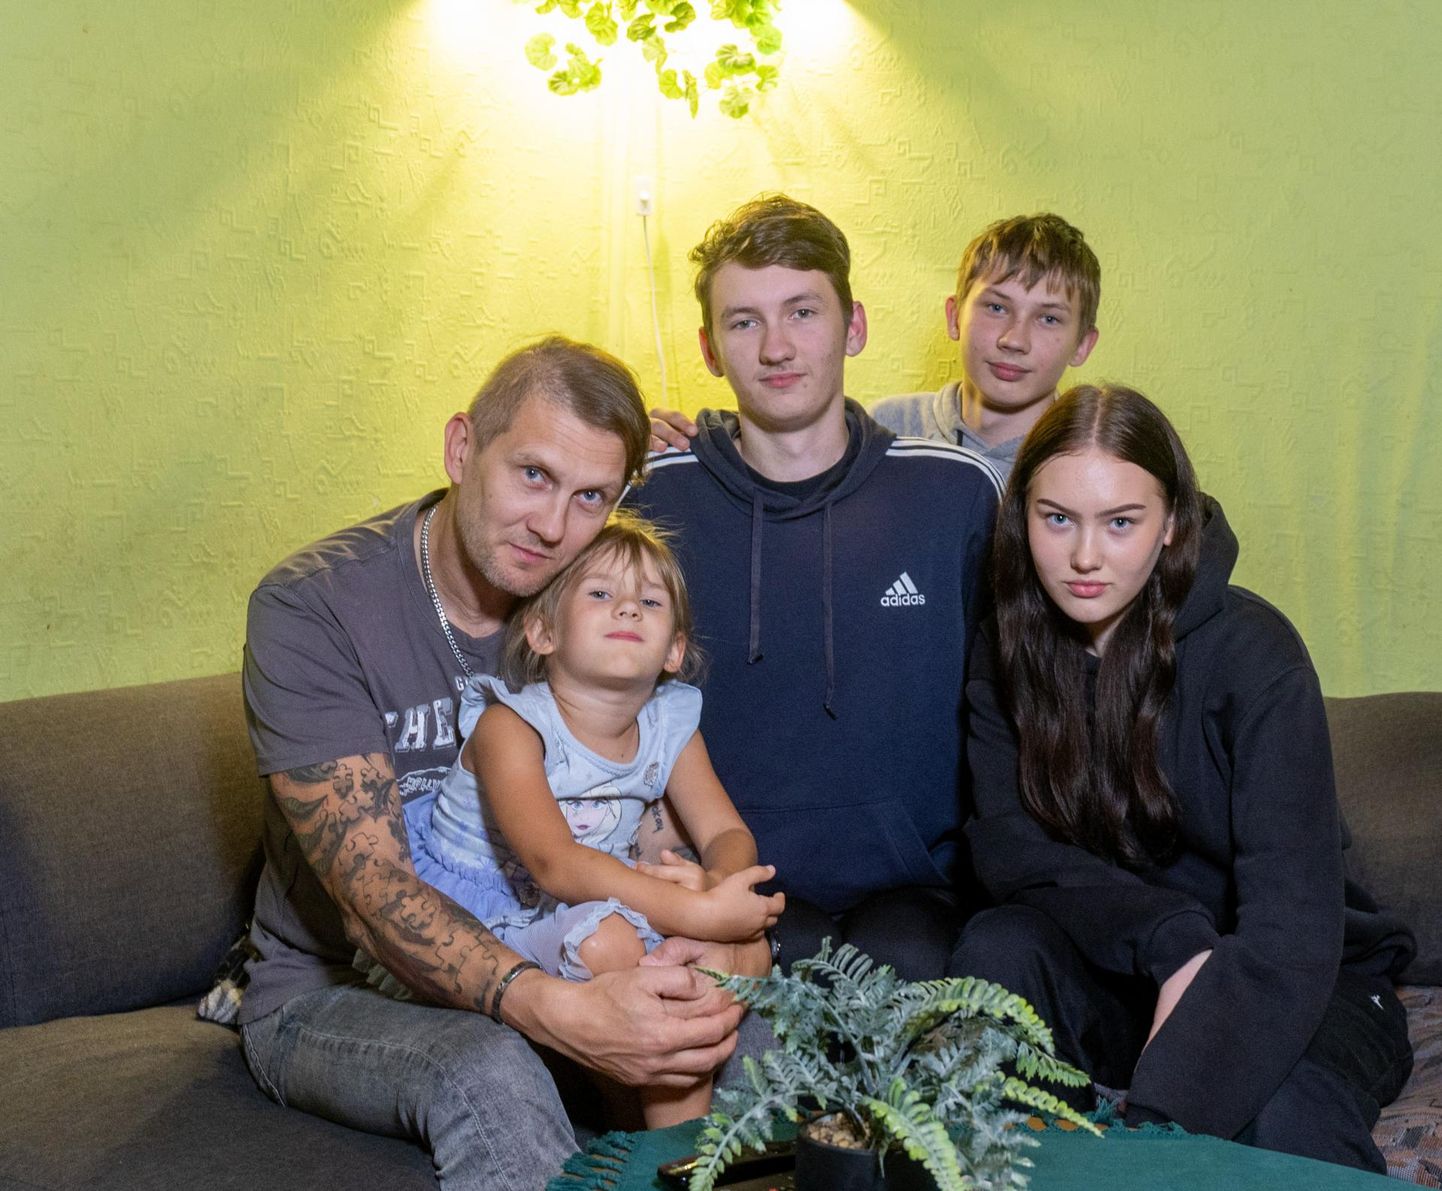 Viljandimaalane Kristo Selberg oma nelja lapsega. Süles pesamuna Crystal (5), paremal Robin (18), Ramon (12) ja Carola (16).